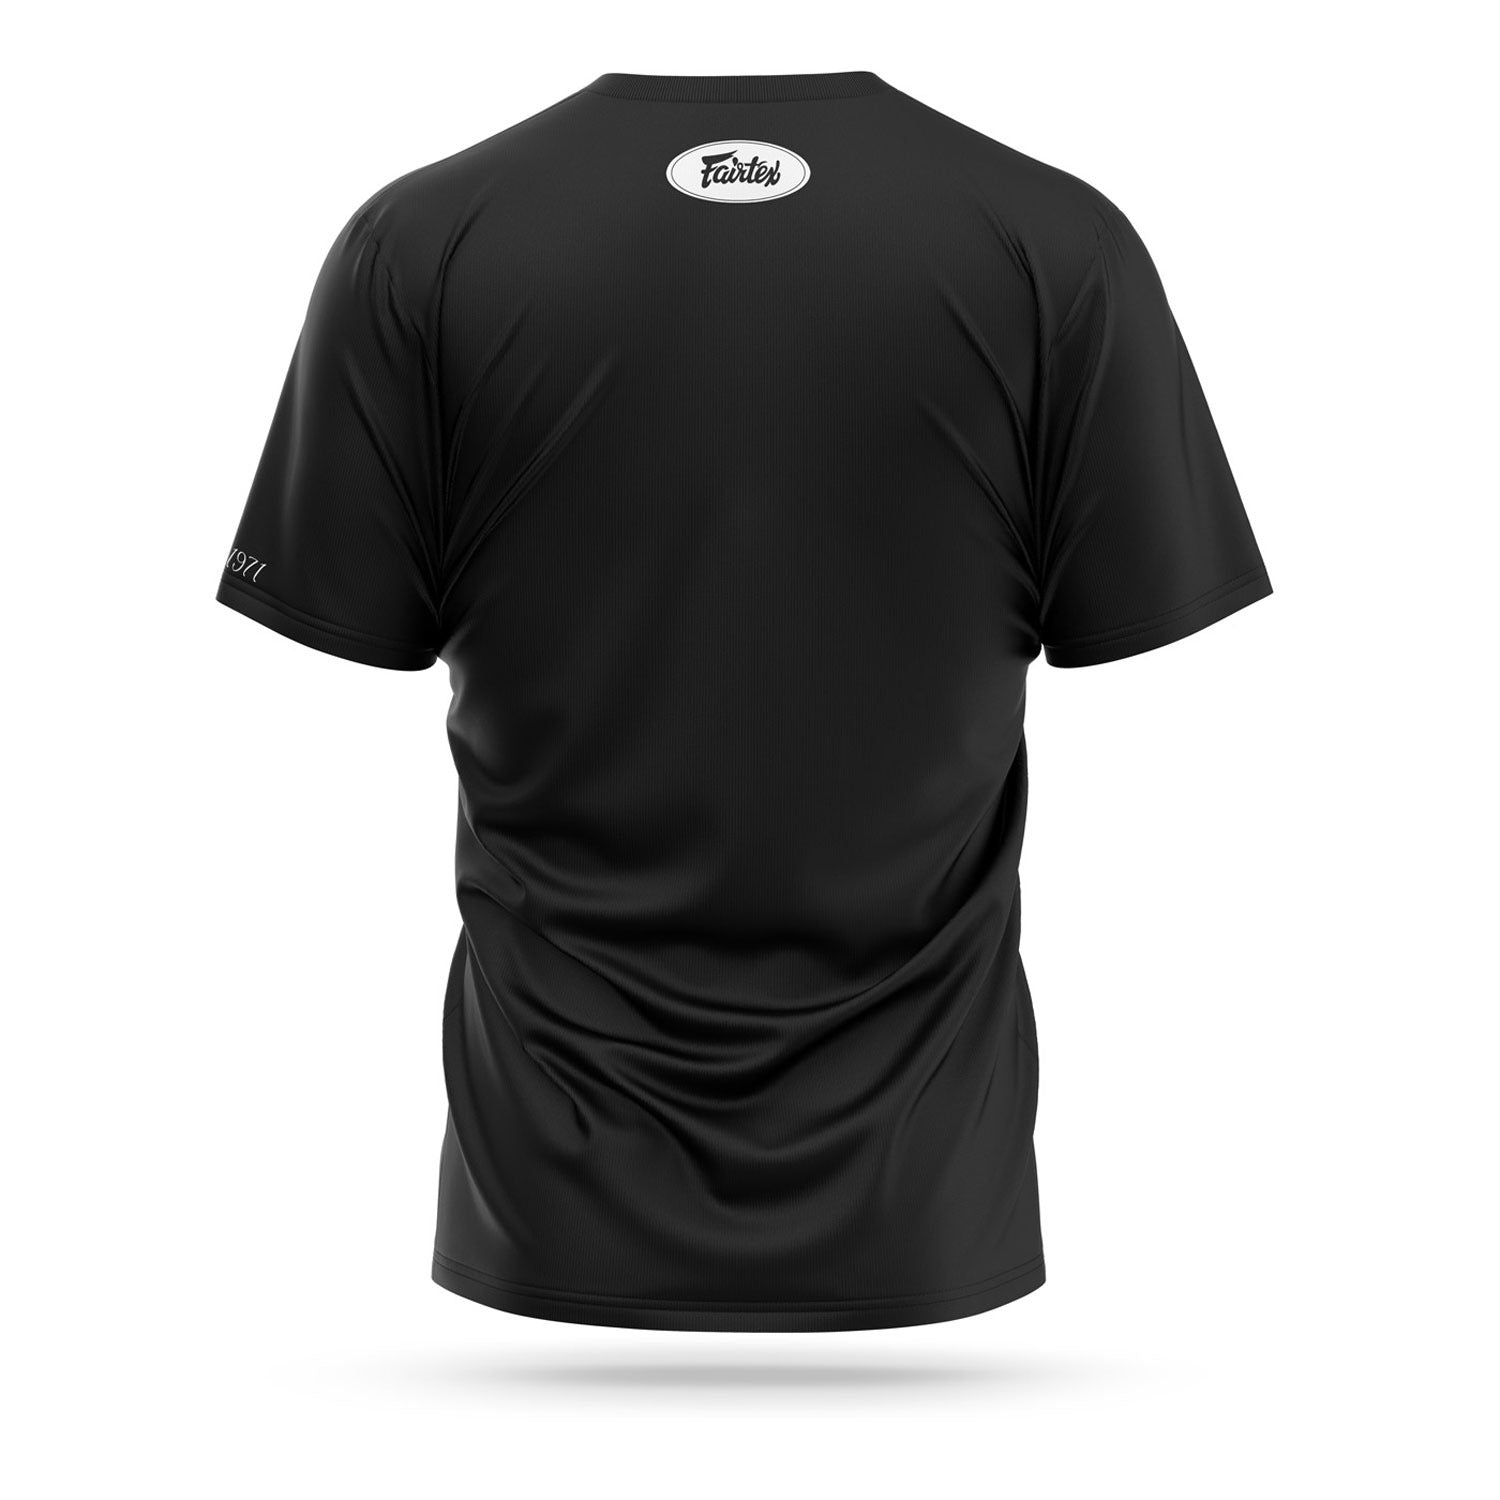 Fairtex Classic Logo Muay Thai T-Shirt TS7 Black